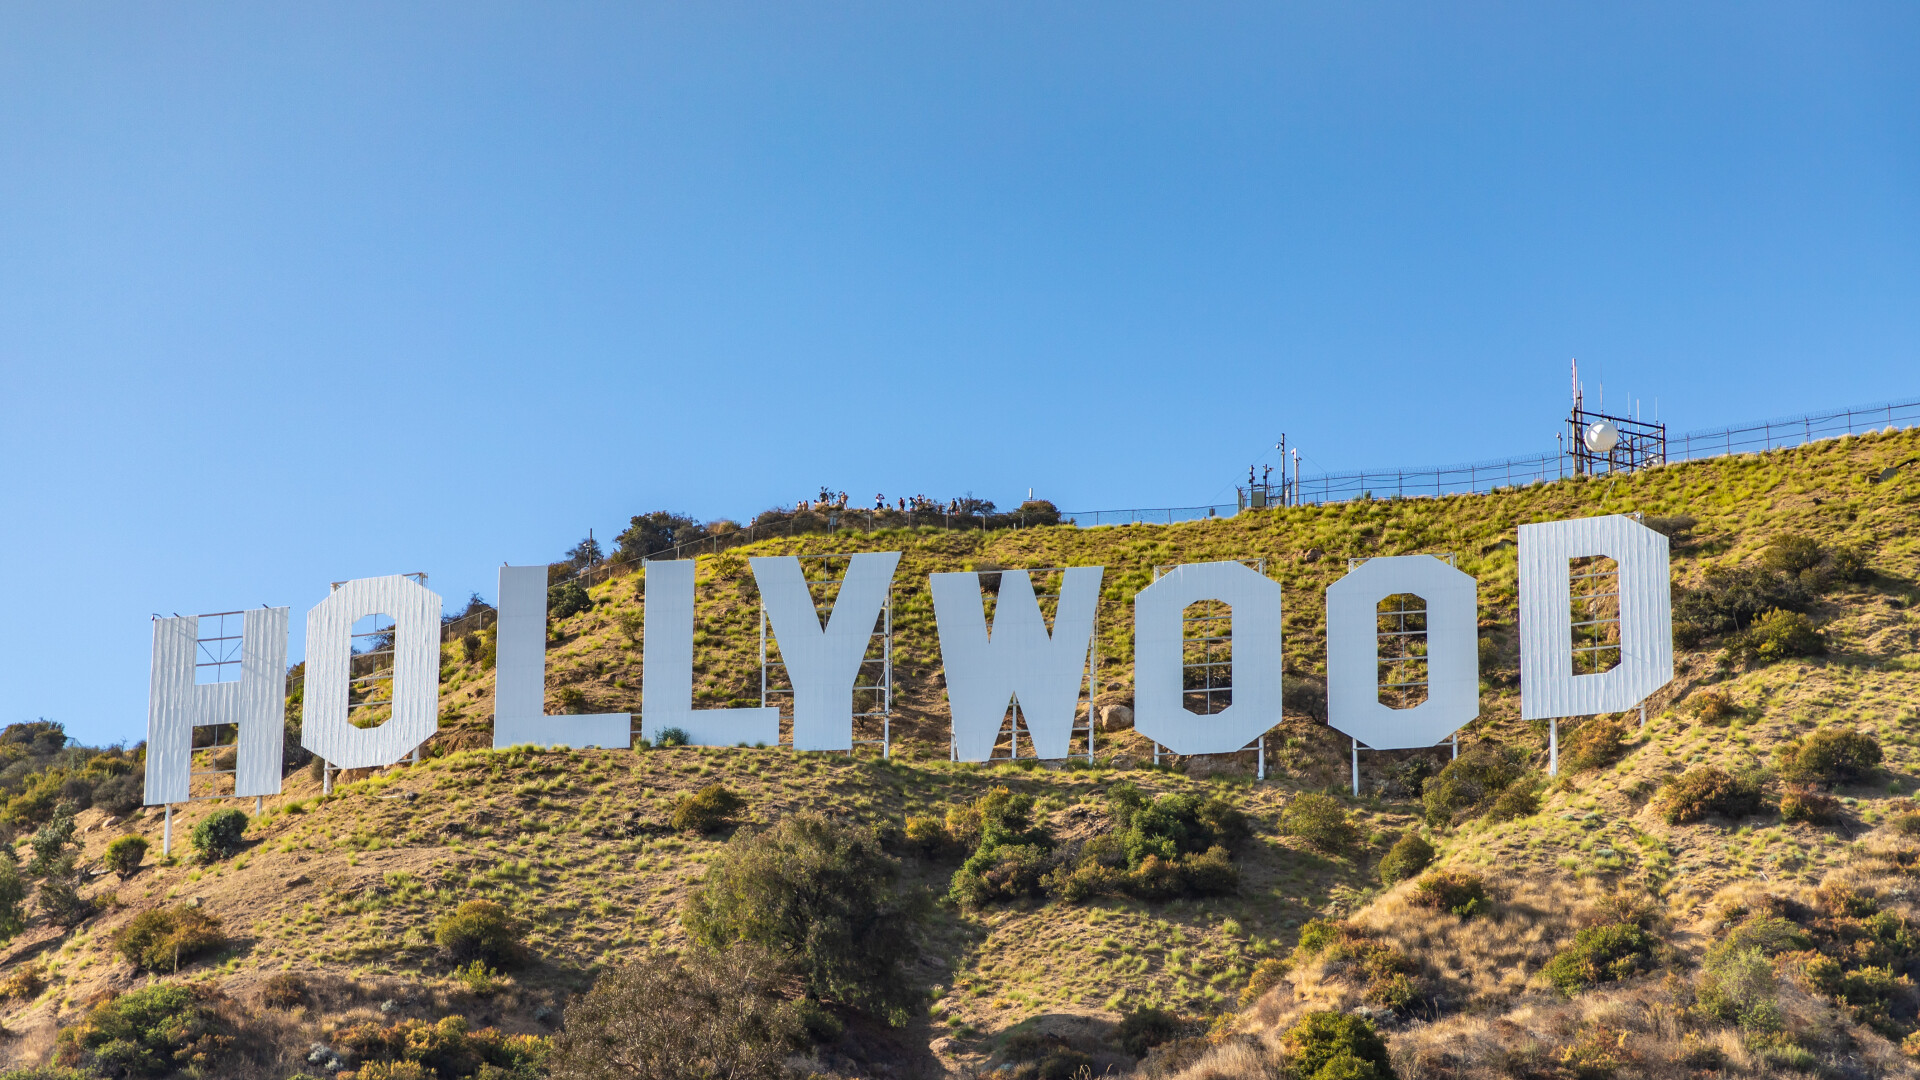 Scenariștii de la Hollywood ies din grevă, după un acord cu marile studiouri. Au rămas însă actorii protestatari